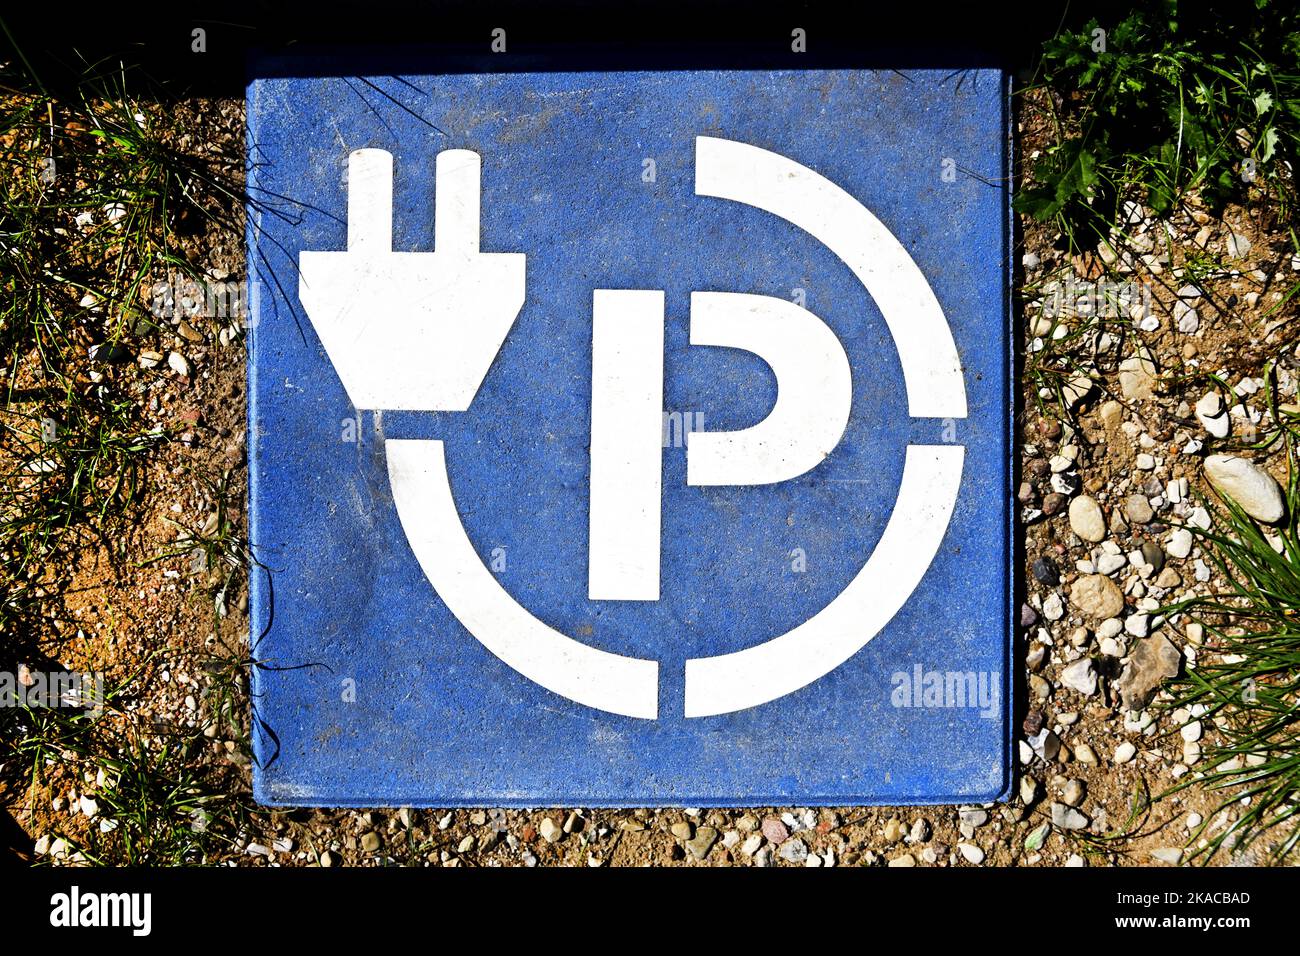 Parkplatz an einer Ladesäule für Elektroautos, Symbolfoto Elektromobilität Stock Photo